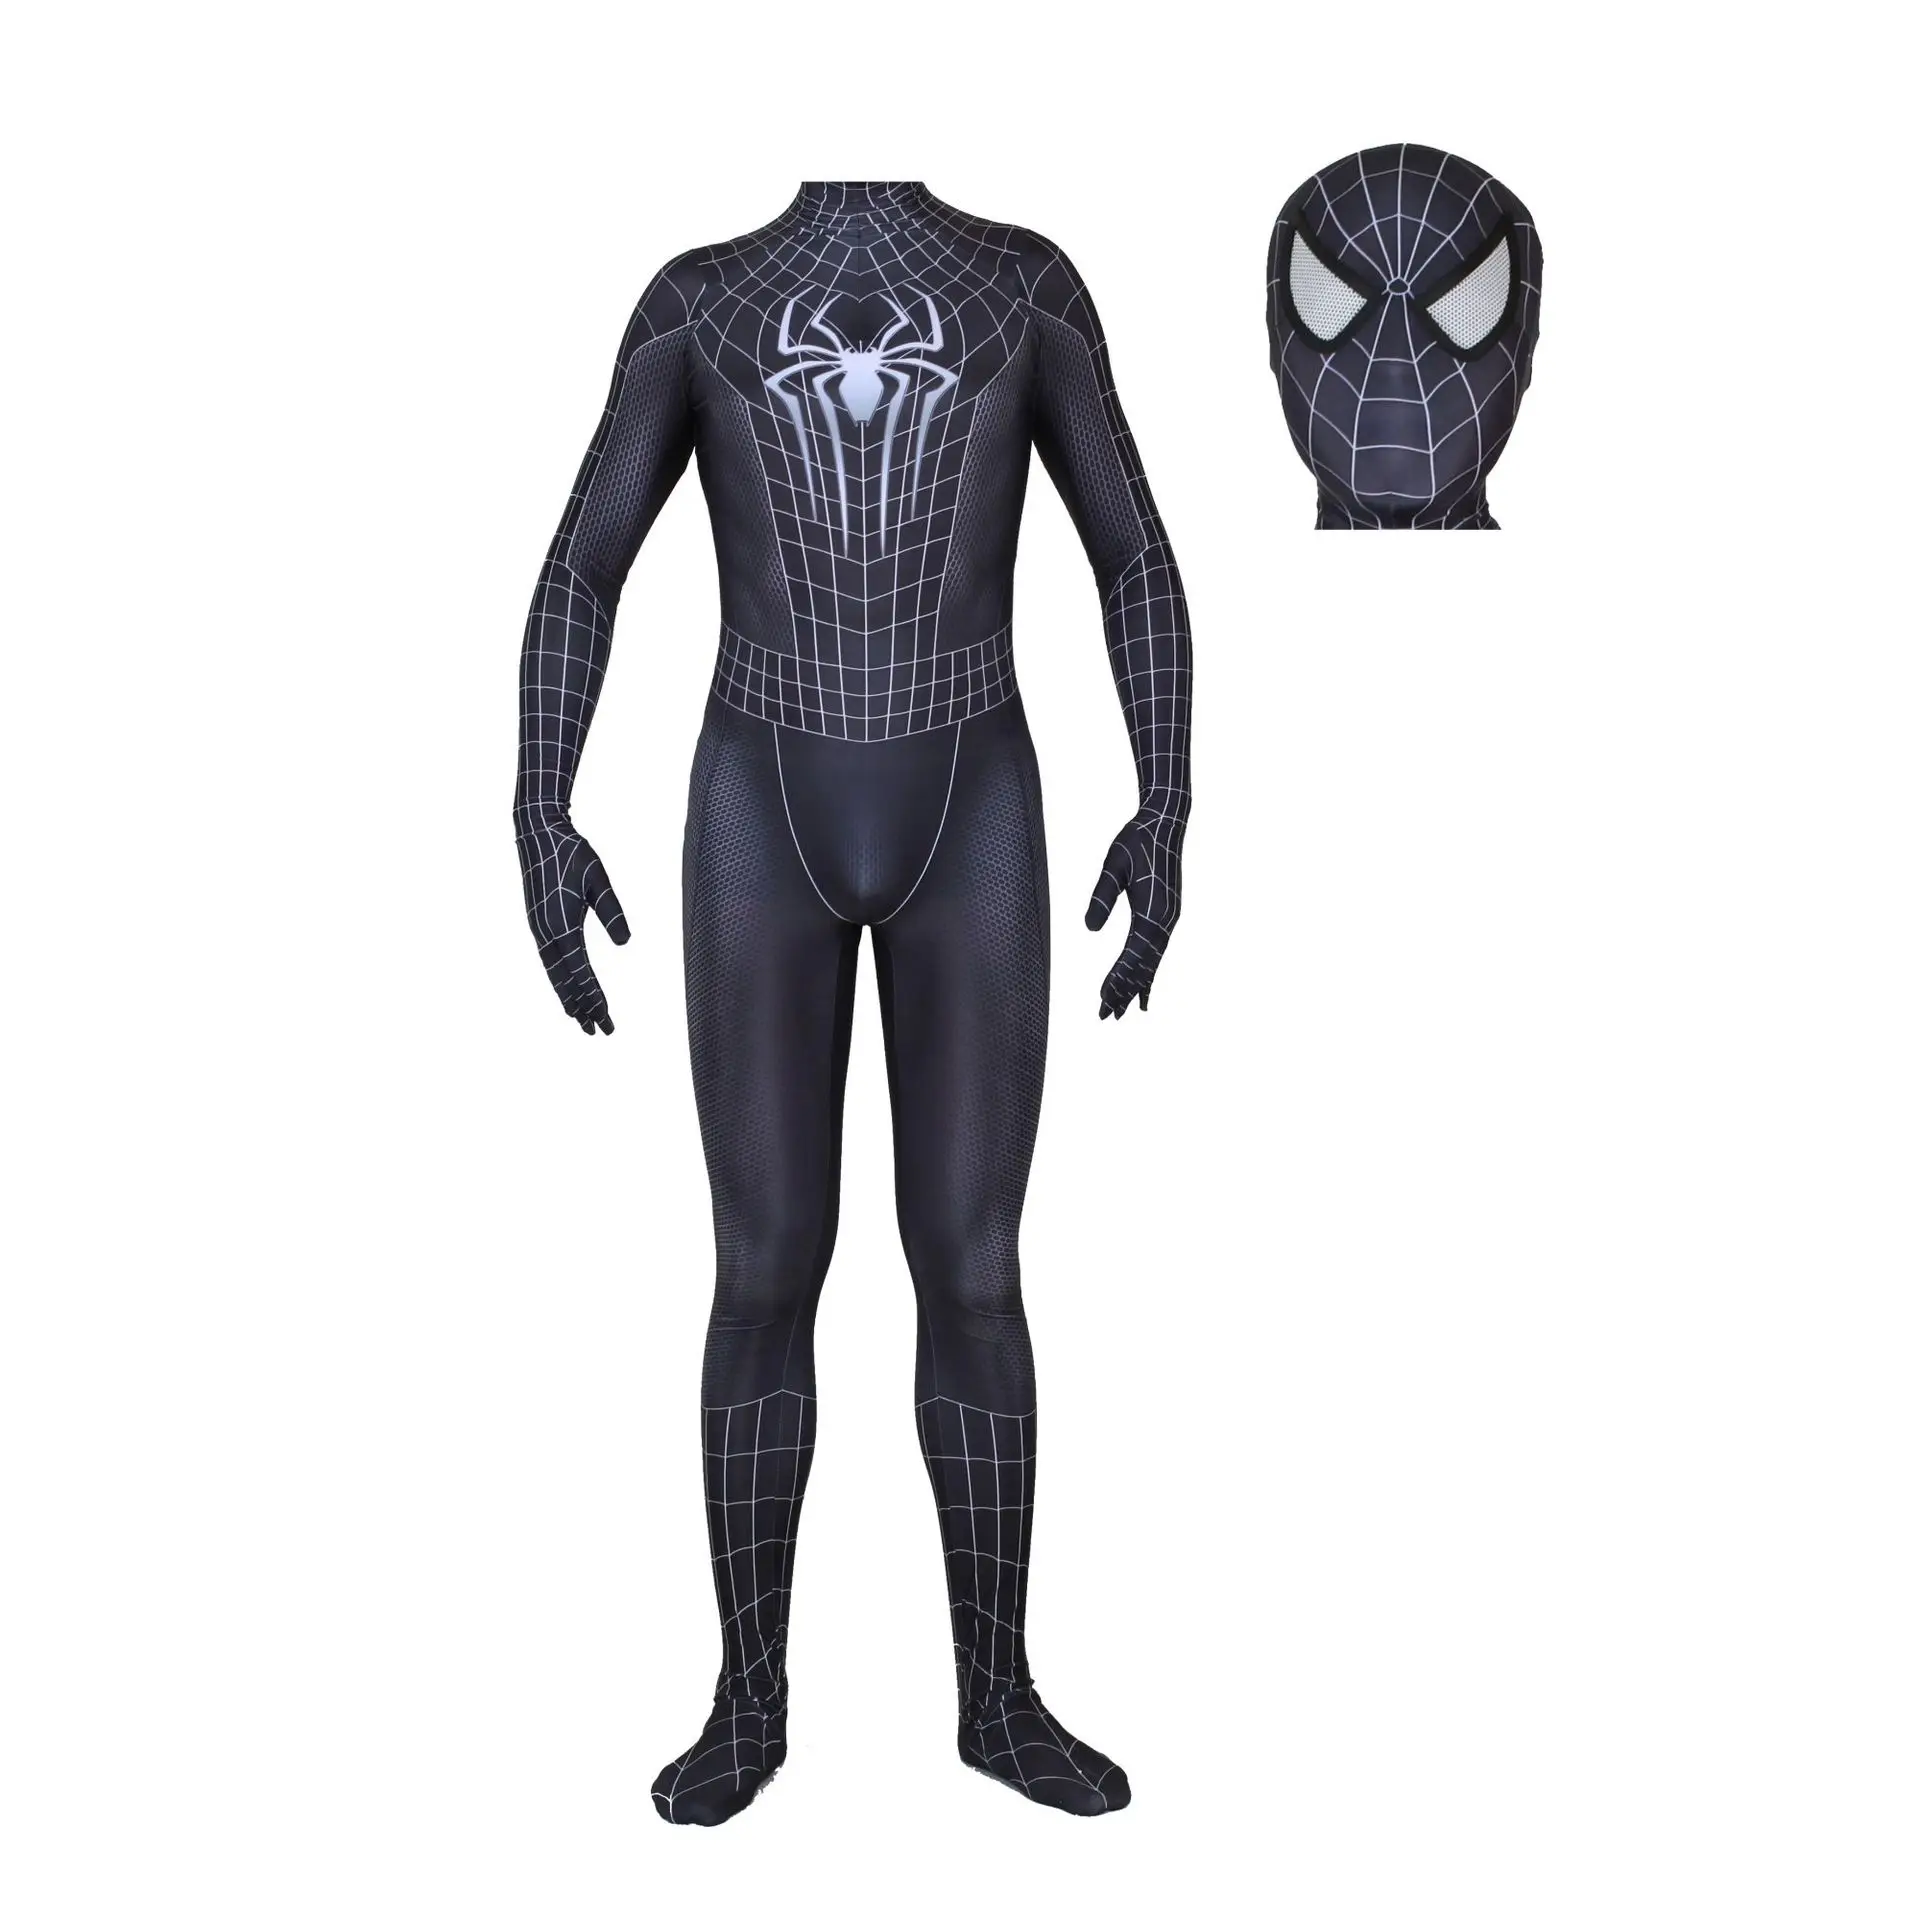 Черный костюм Человека-паука из фильма, маска, костюм супергероя, костюм паука, карнавальный костюм супергероя, человека-паука, костюм на Хэллоуин для мужчин, детей, взрослых мальчиков - Цвет: Removable Mask 1